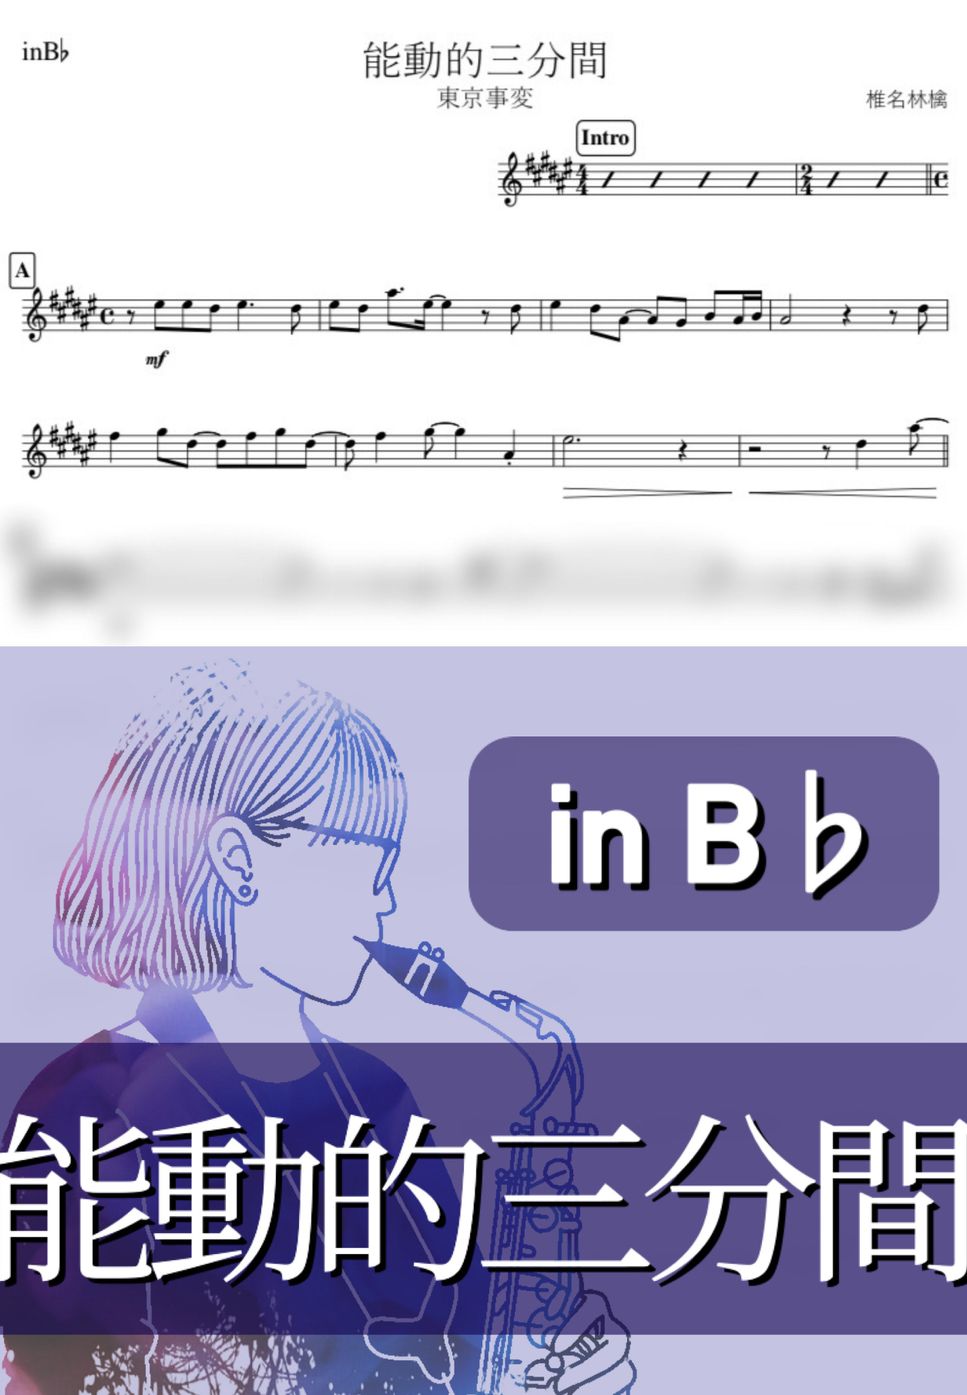 東京事変 - 能動的三分間 (B♭) by kanamusic